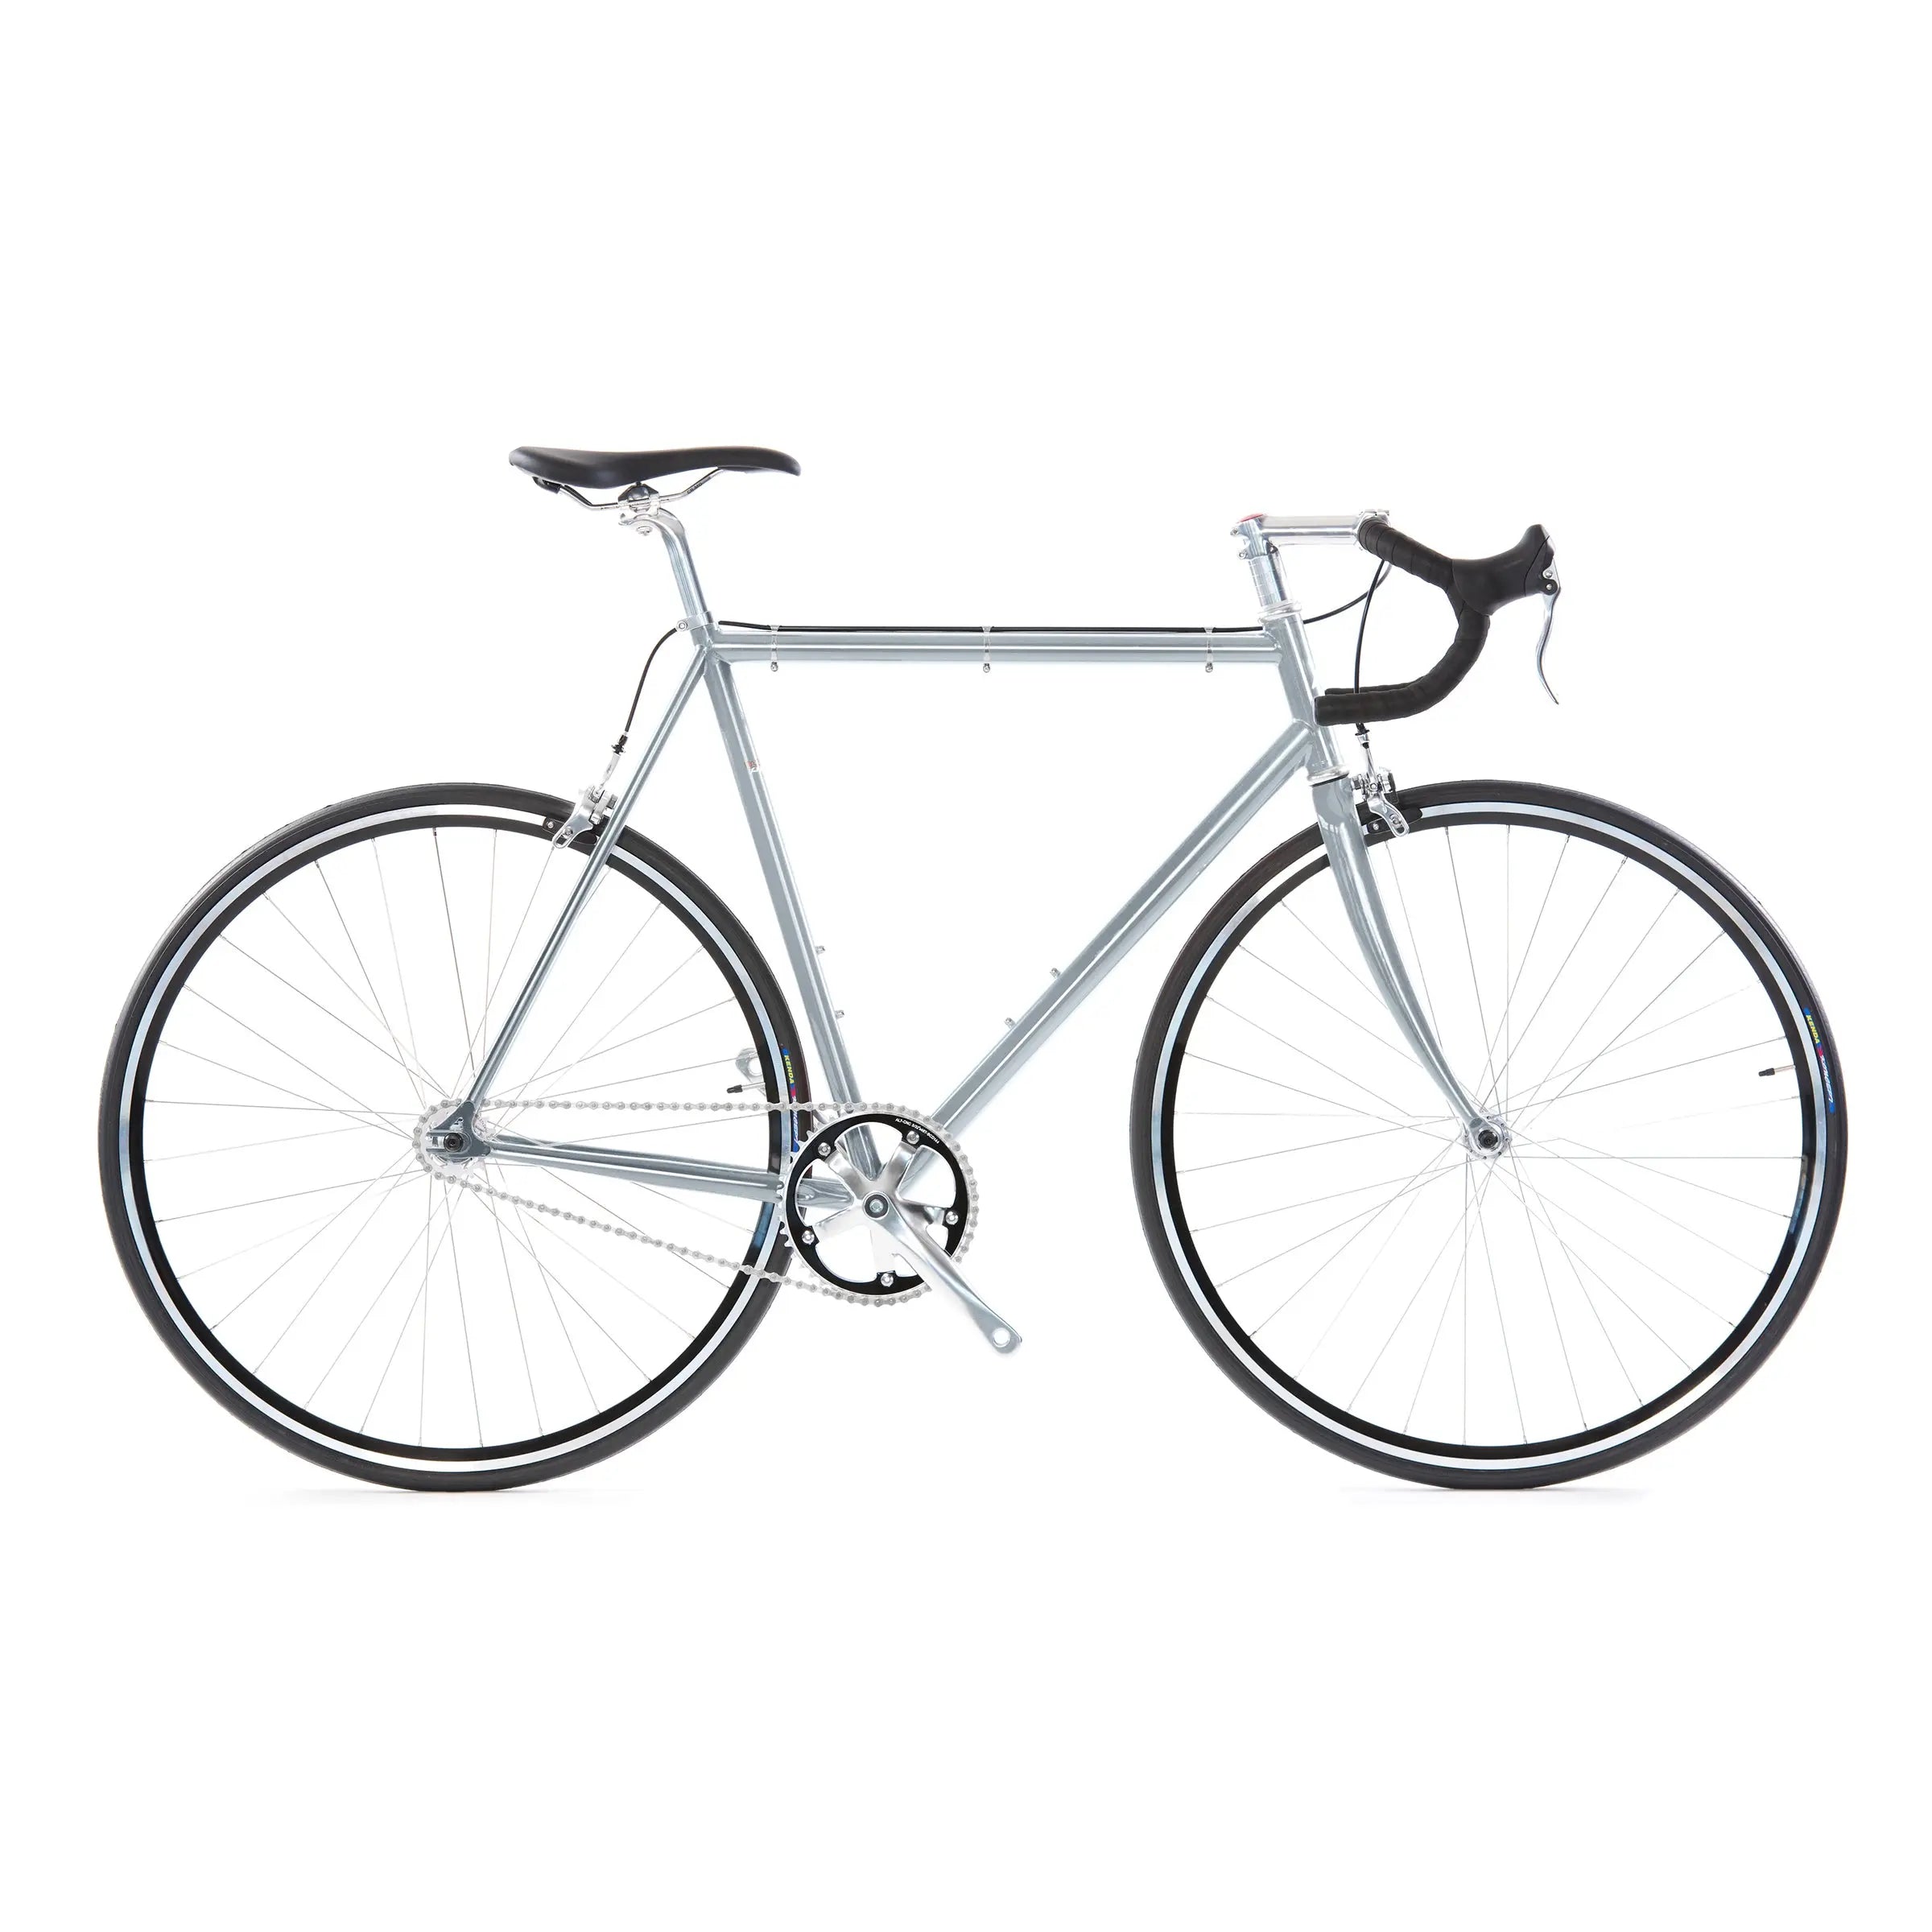 Wabi Cycles  Lightweight Steel Single Speed - Fixed Gear Bikes.